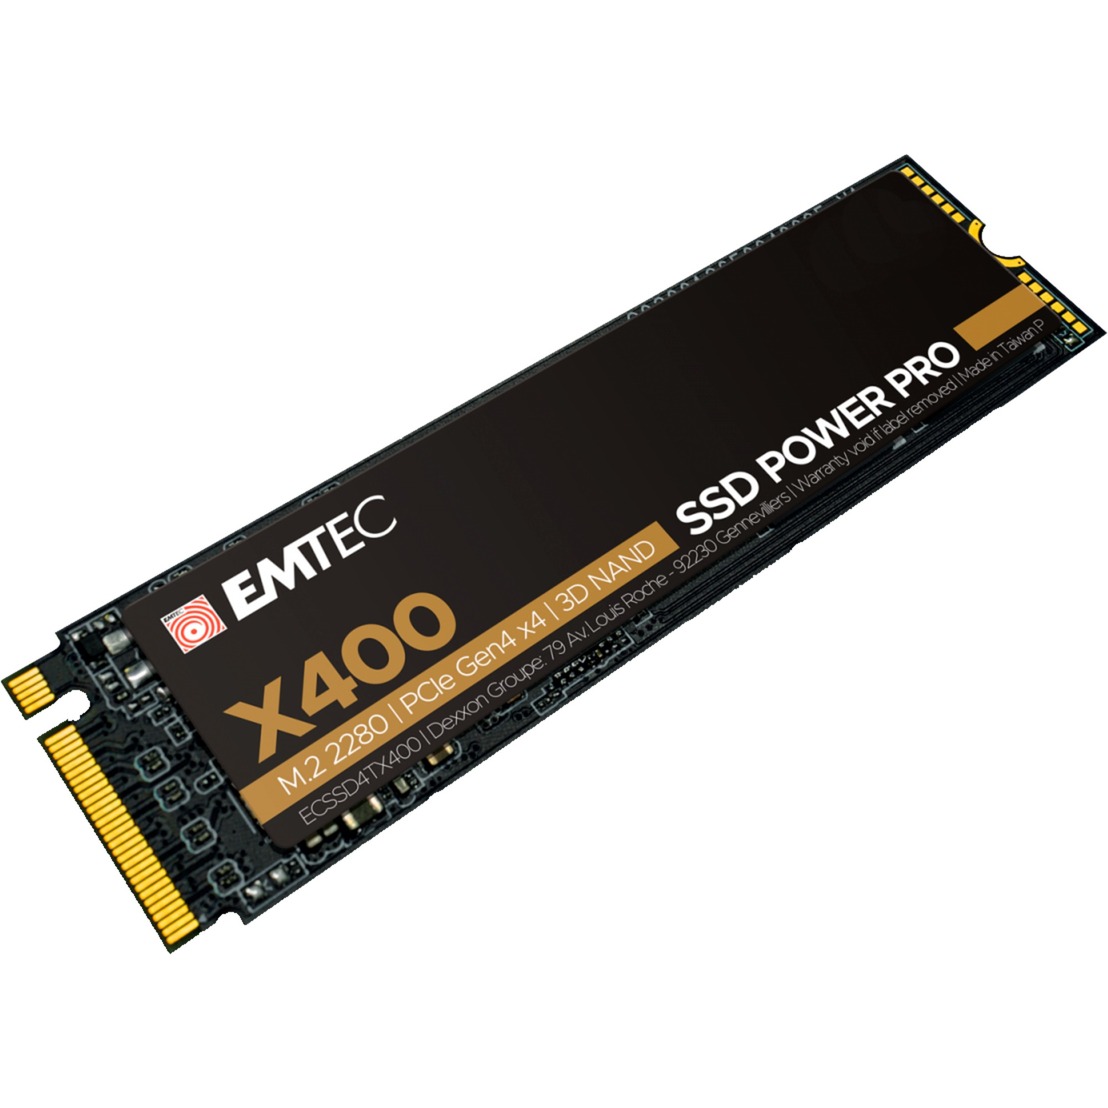 Image of Alternate - X400 SSD Power Pro 4 TB online einkaufen bei Alternate